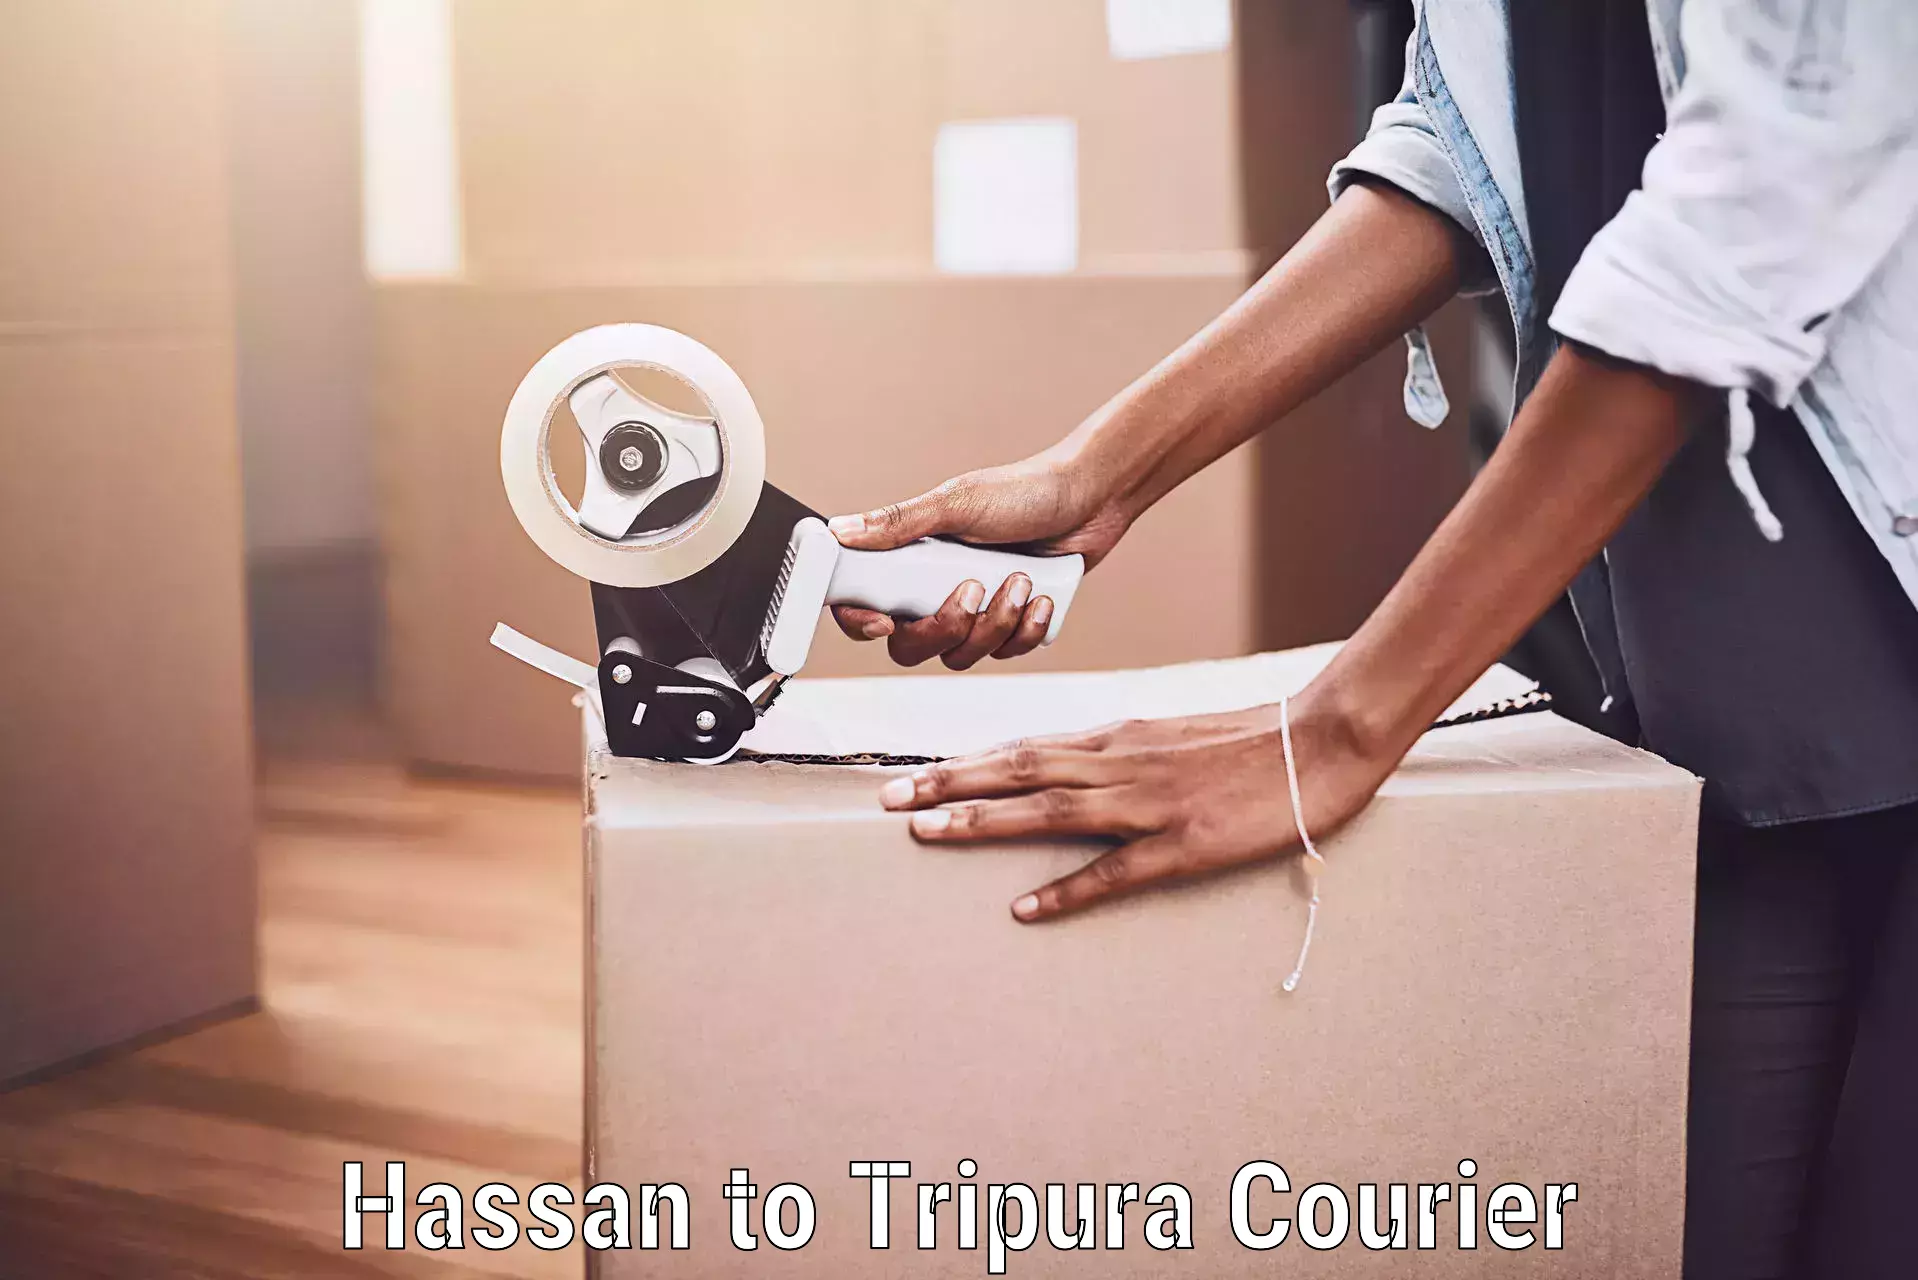 Door-to-door baggage service Hassan to Tripura